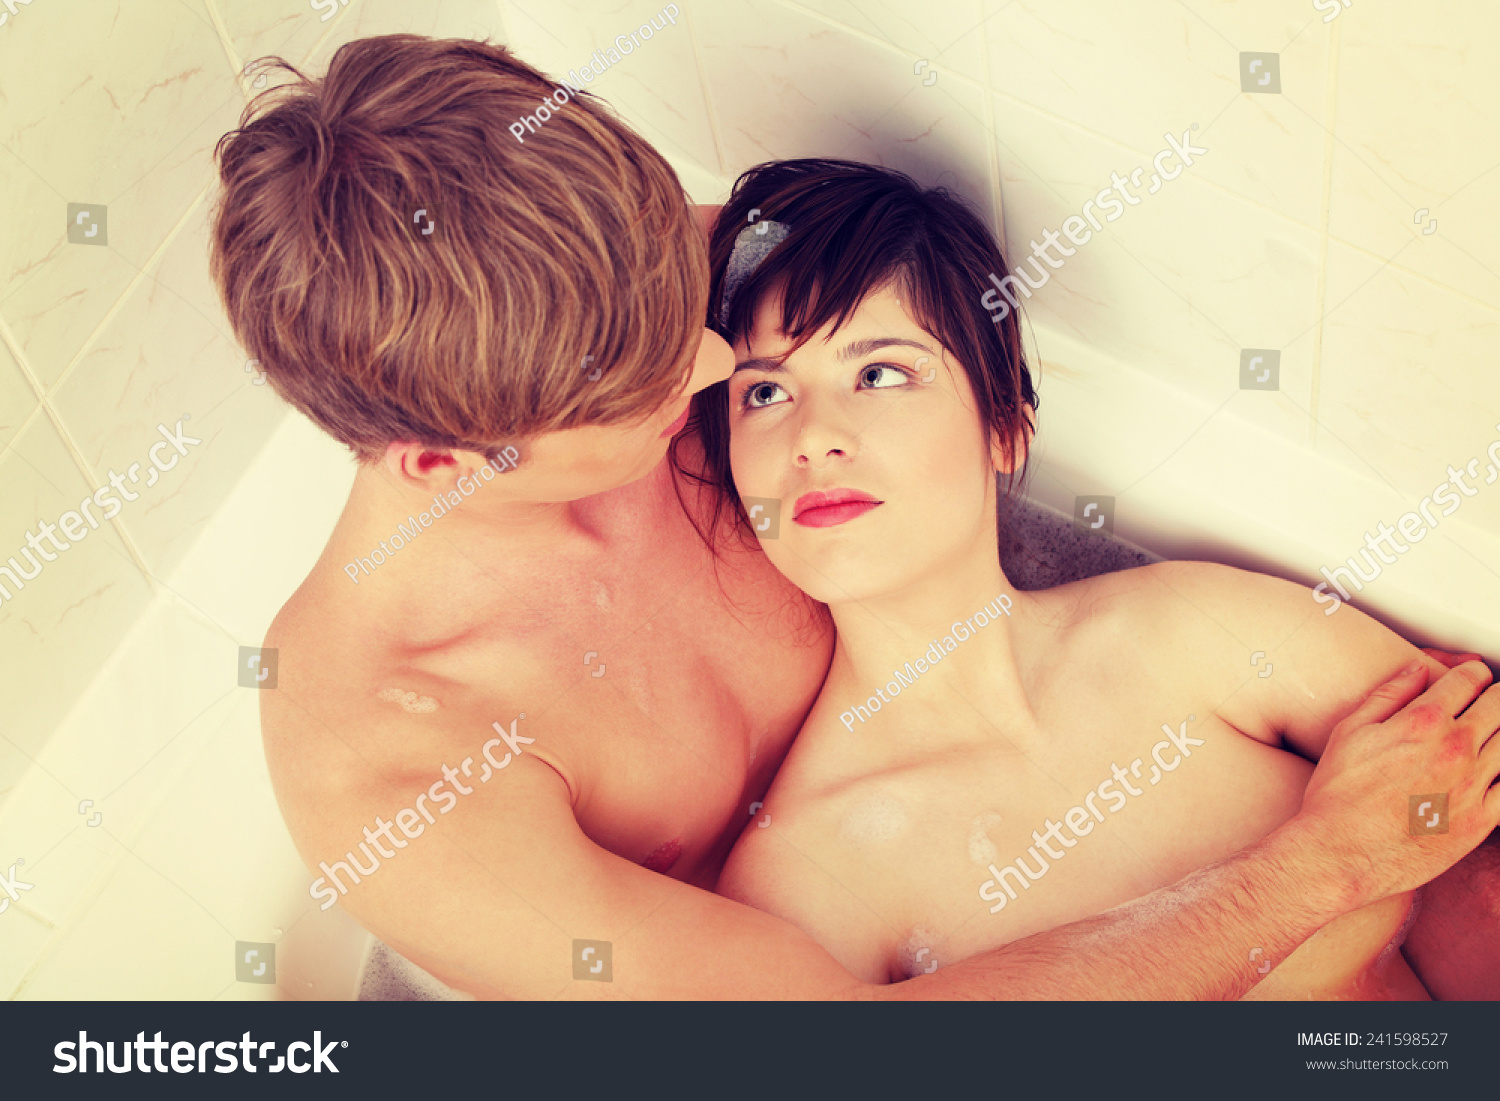 мама мыла сына в ванной русское порно фото 118